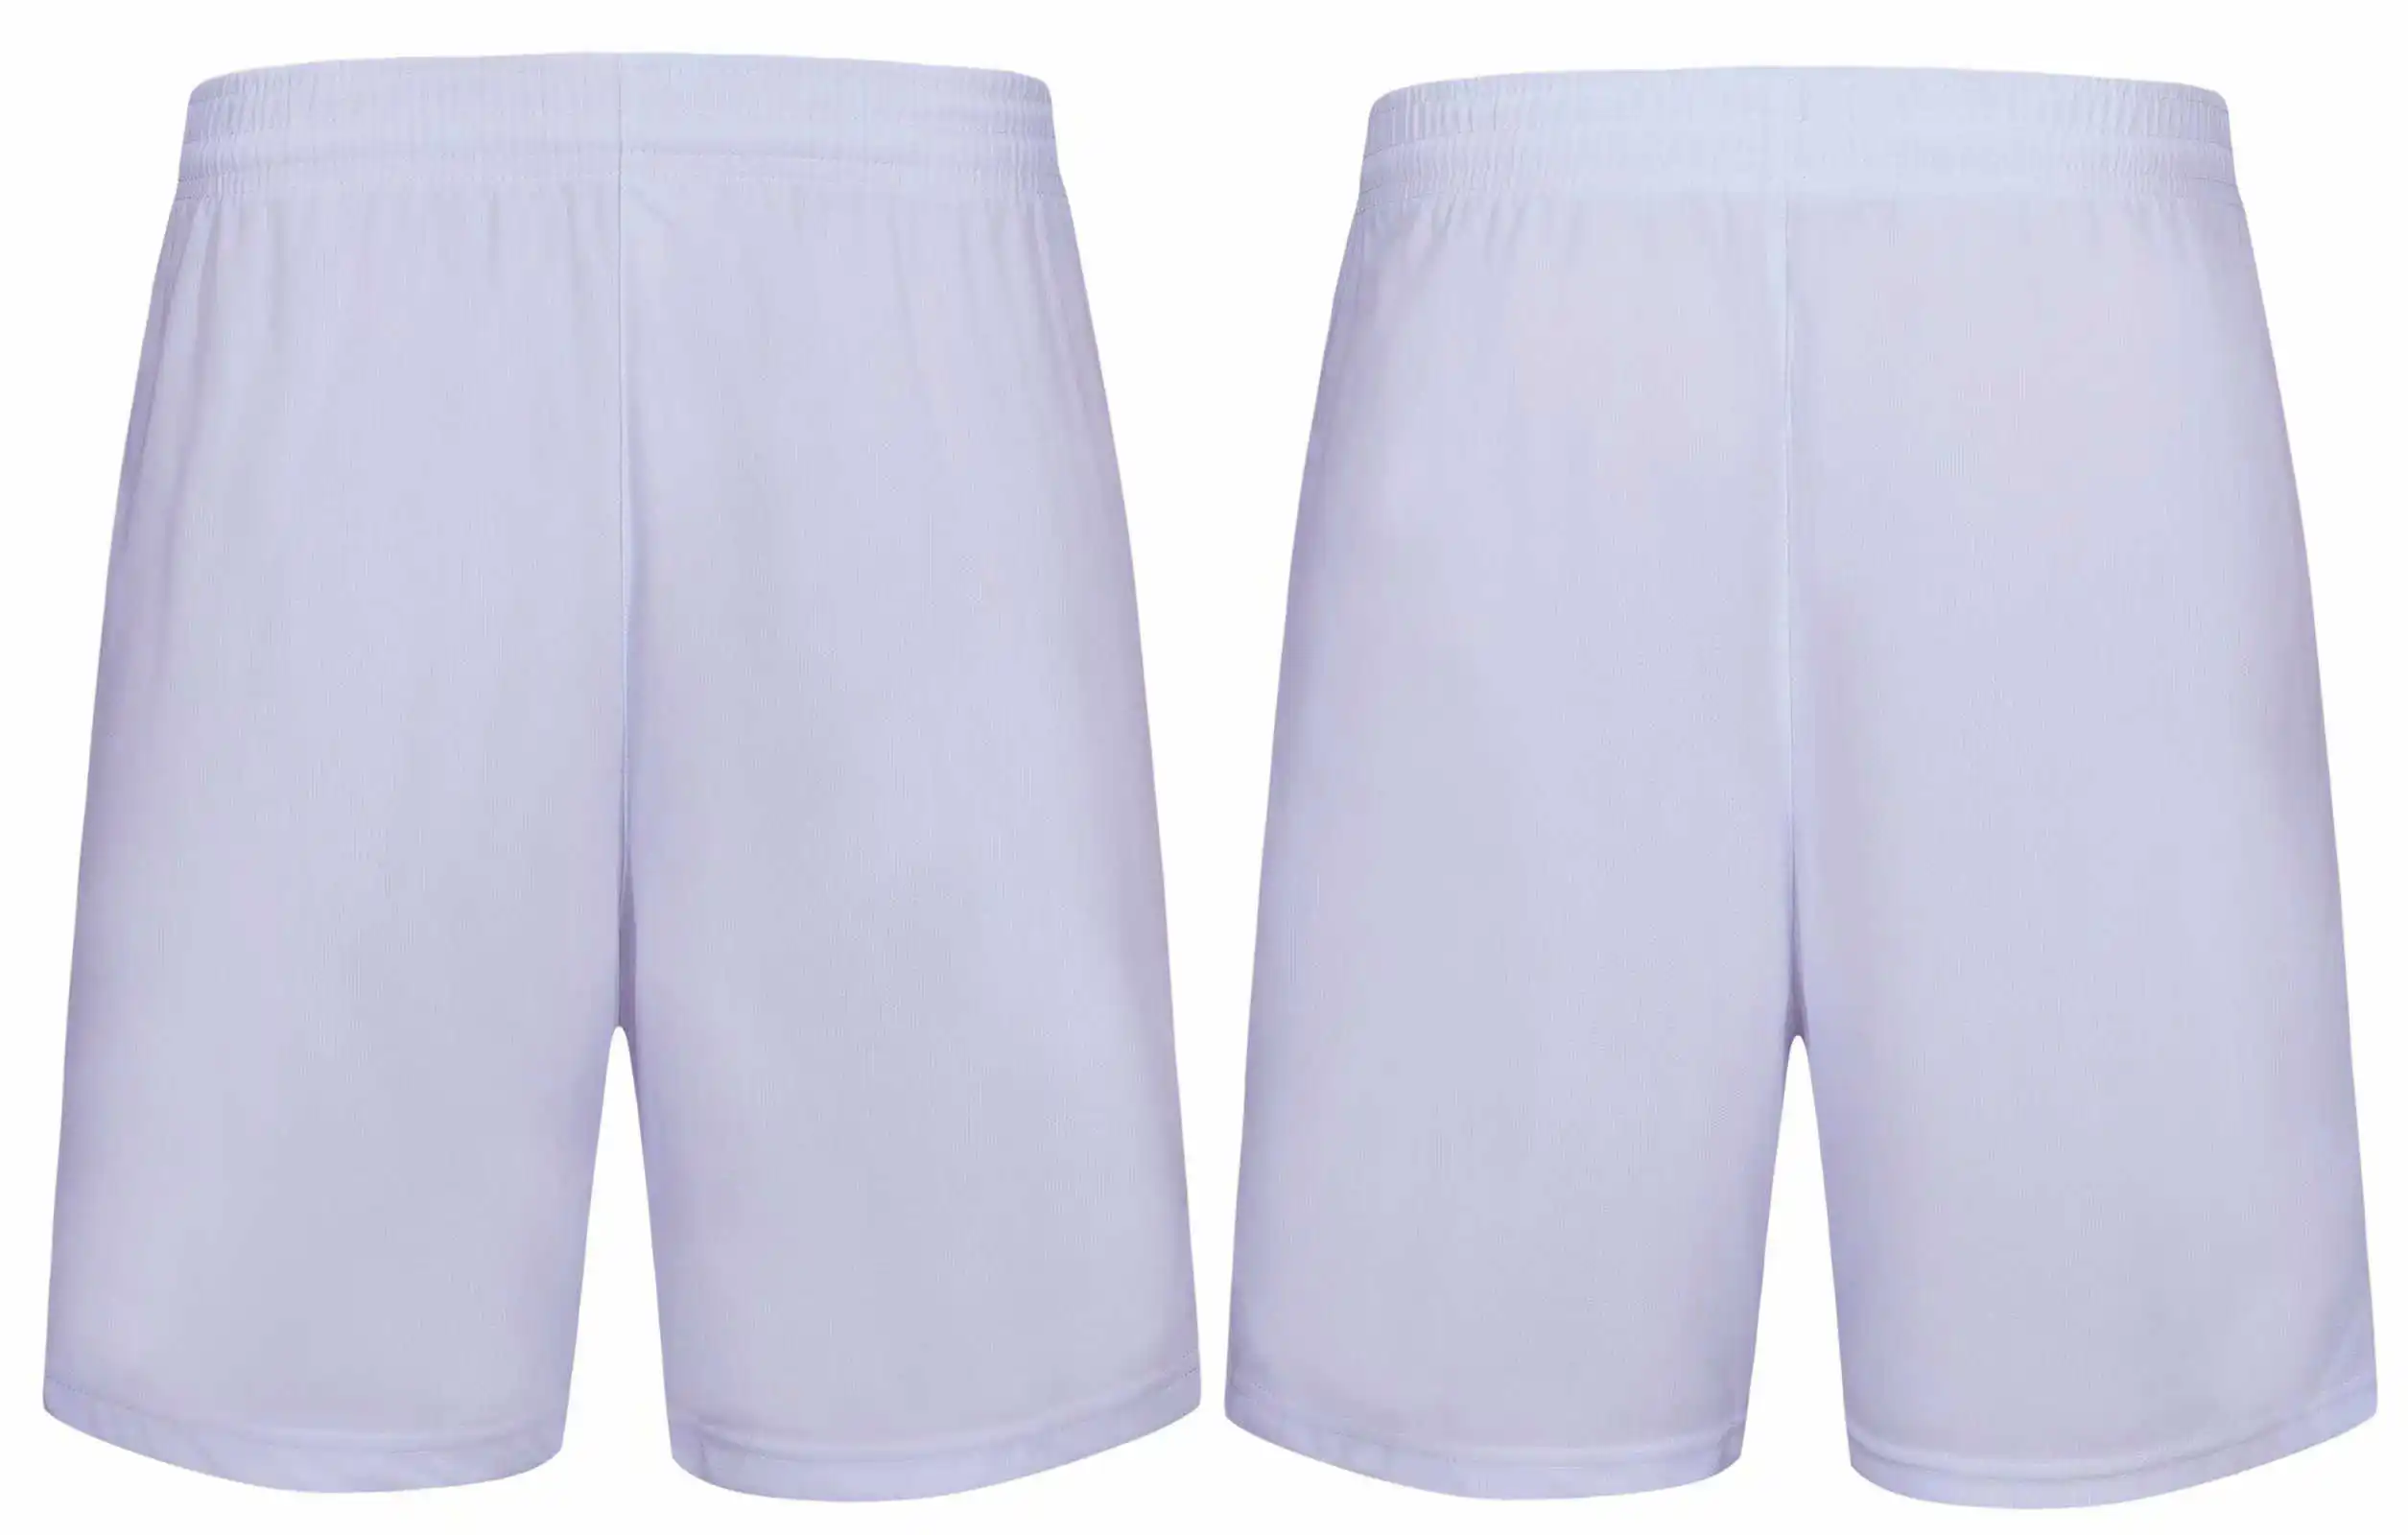 Однотонные детские штаны, детские штаны для занятий спортом, тренировок, баскетбола, футбола, футбола, летние пляжные свободные шорты для мальчиков - Цвет: 8810 white shorts